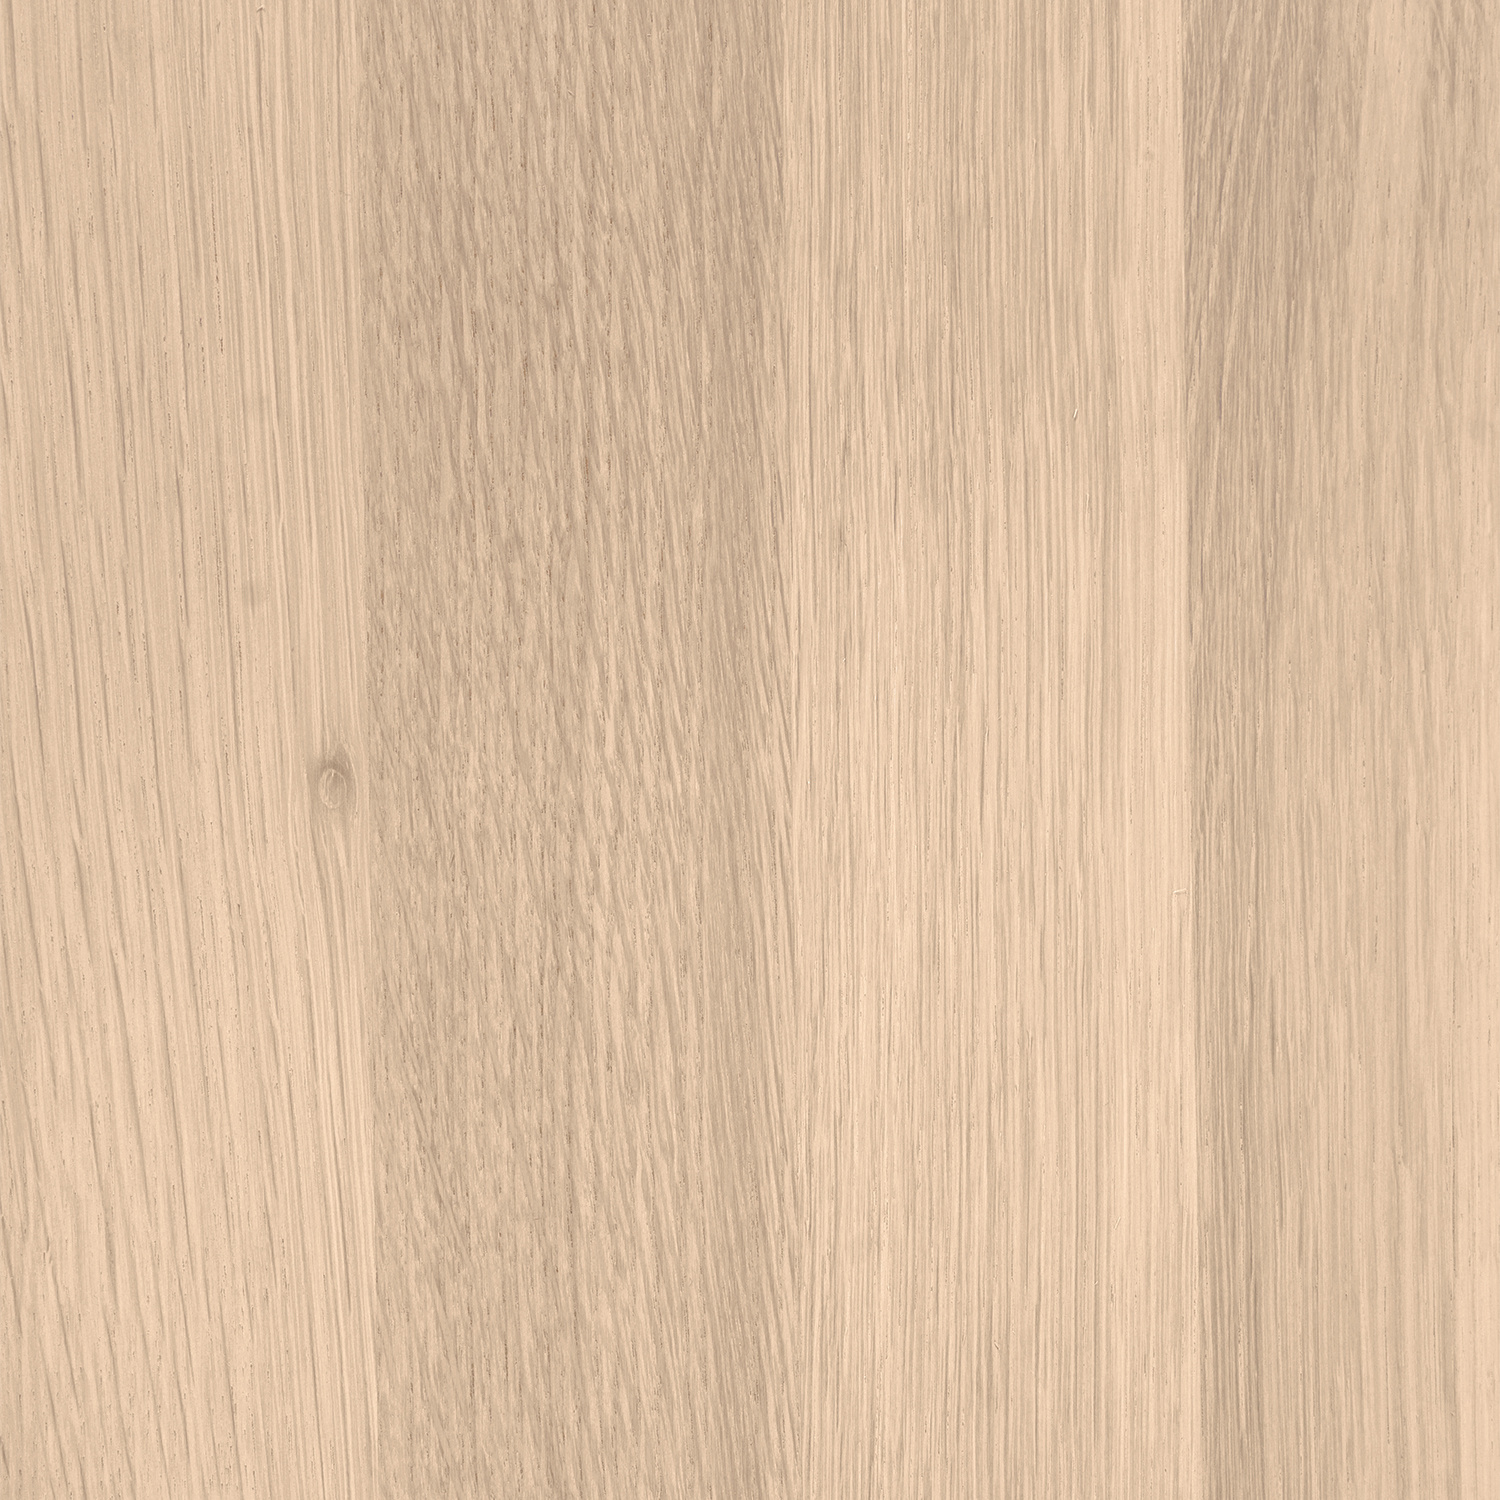  Leimholzplatte Eiche nach Maß - 5 cm dick (2-lagig) - Eichenholz A-Qualität- Eiche Massivholzplatte - verleimt & künstlich getrocknet (HF 8-12%) - 15-120x20-350 cm